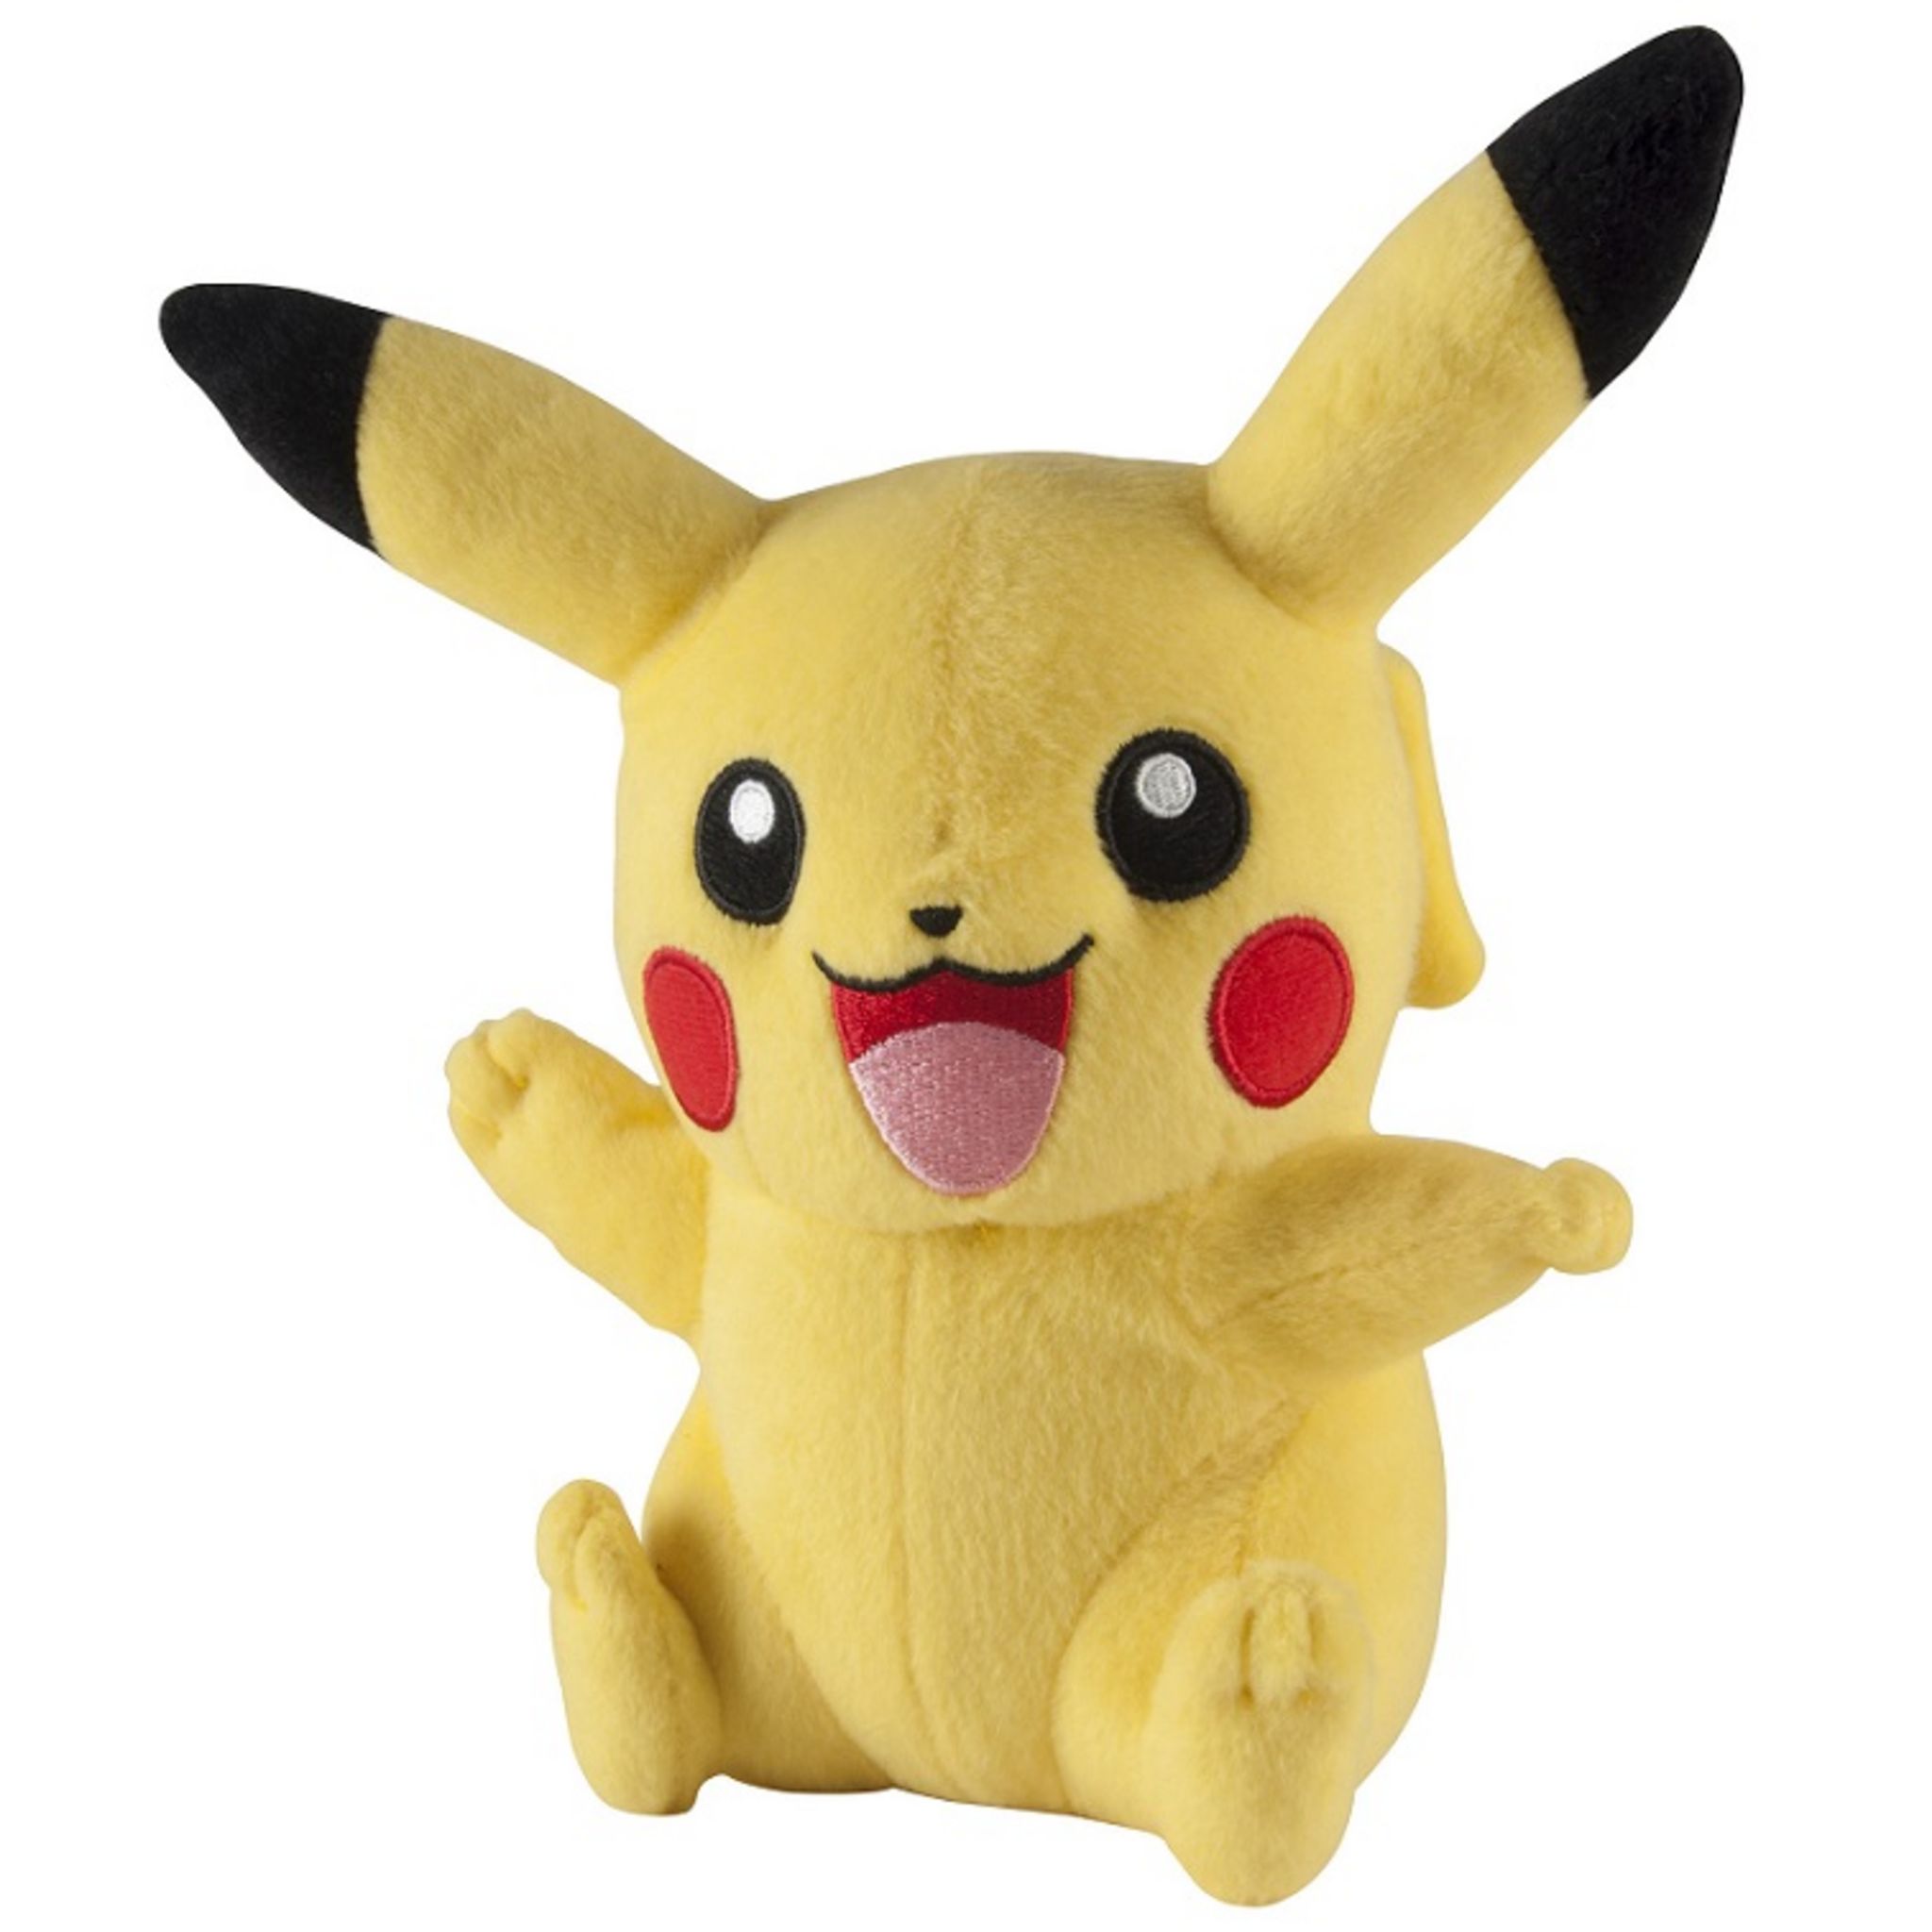 TOMY Pikachu Peluche – Pokémon Peluche 20 cm de Haute qualité